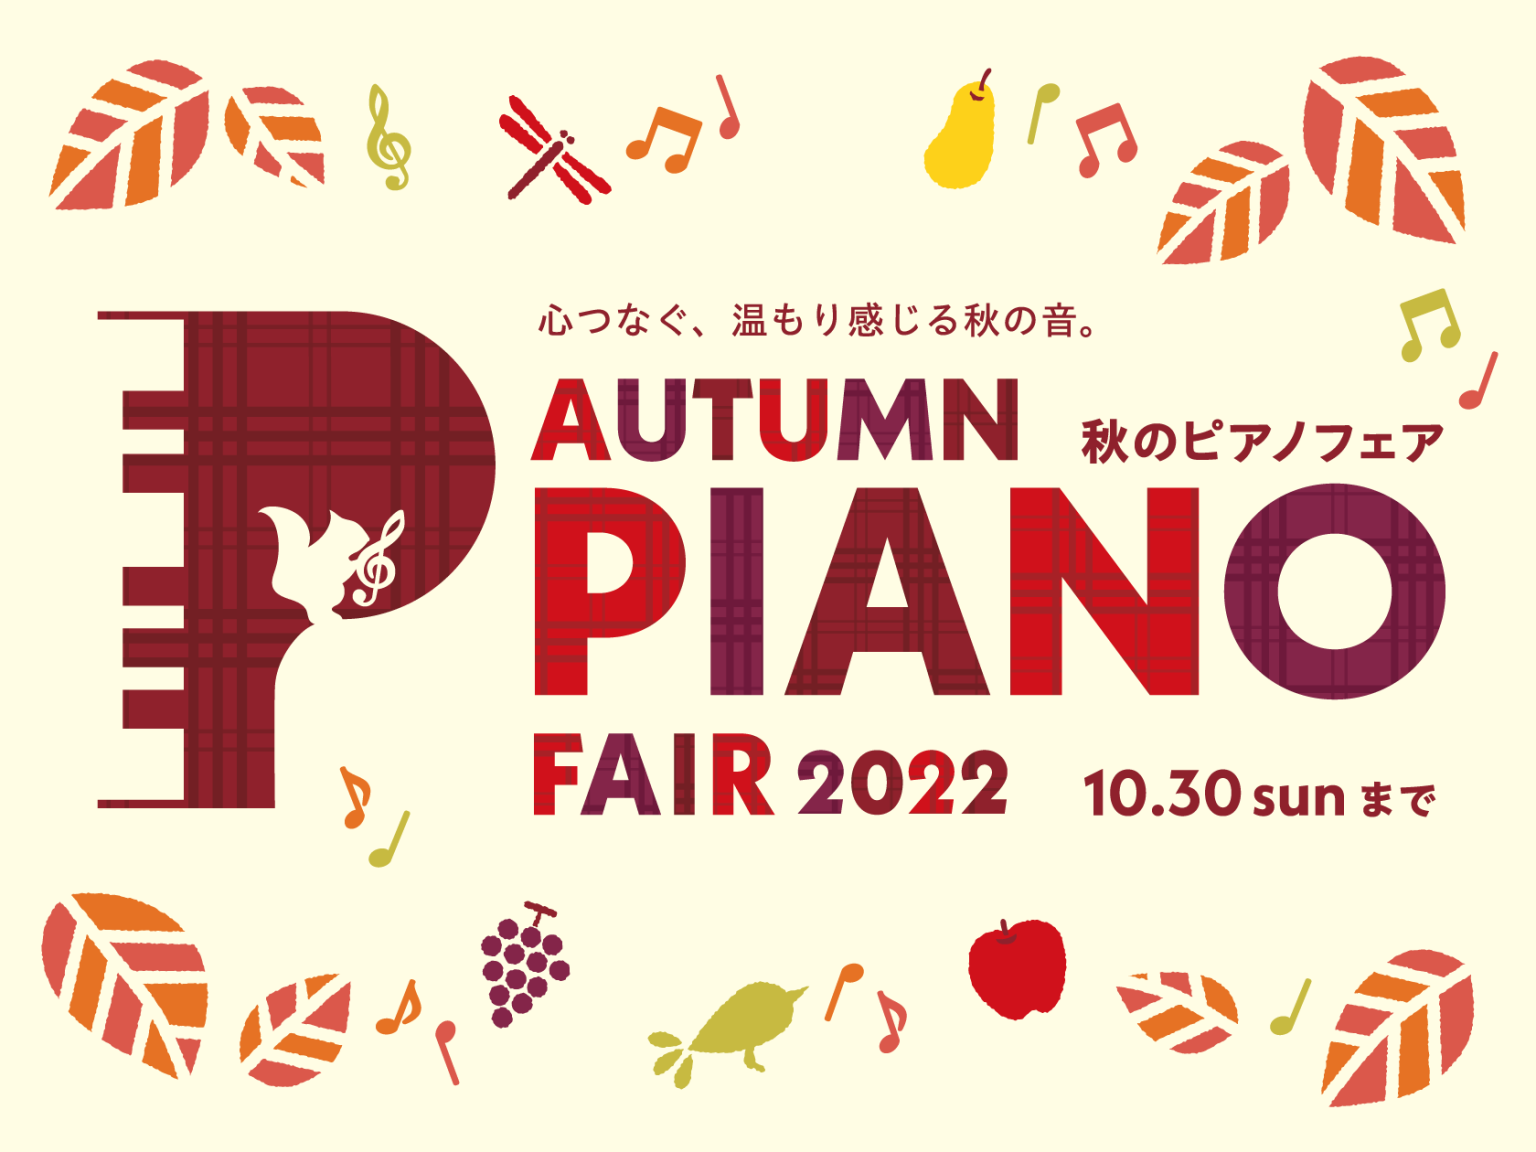 CONTENTS栃木県で電子ピアノ購入なら安心・丁寧接客の当店にお越しください！栃木県で電子ピアノ購入なら安心・丁寧接客の当店にお越しください！ 当店では秋の電子ピアノフェア―を開催中です！お子様のレッスンにぴったりのモデルから、趣味で弾きたい方まで楽しめる 電子ピアノを多数展示いたしております。ま […]